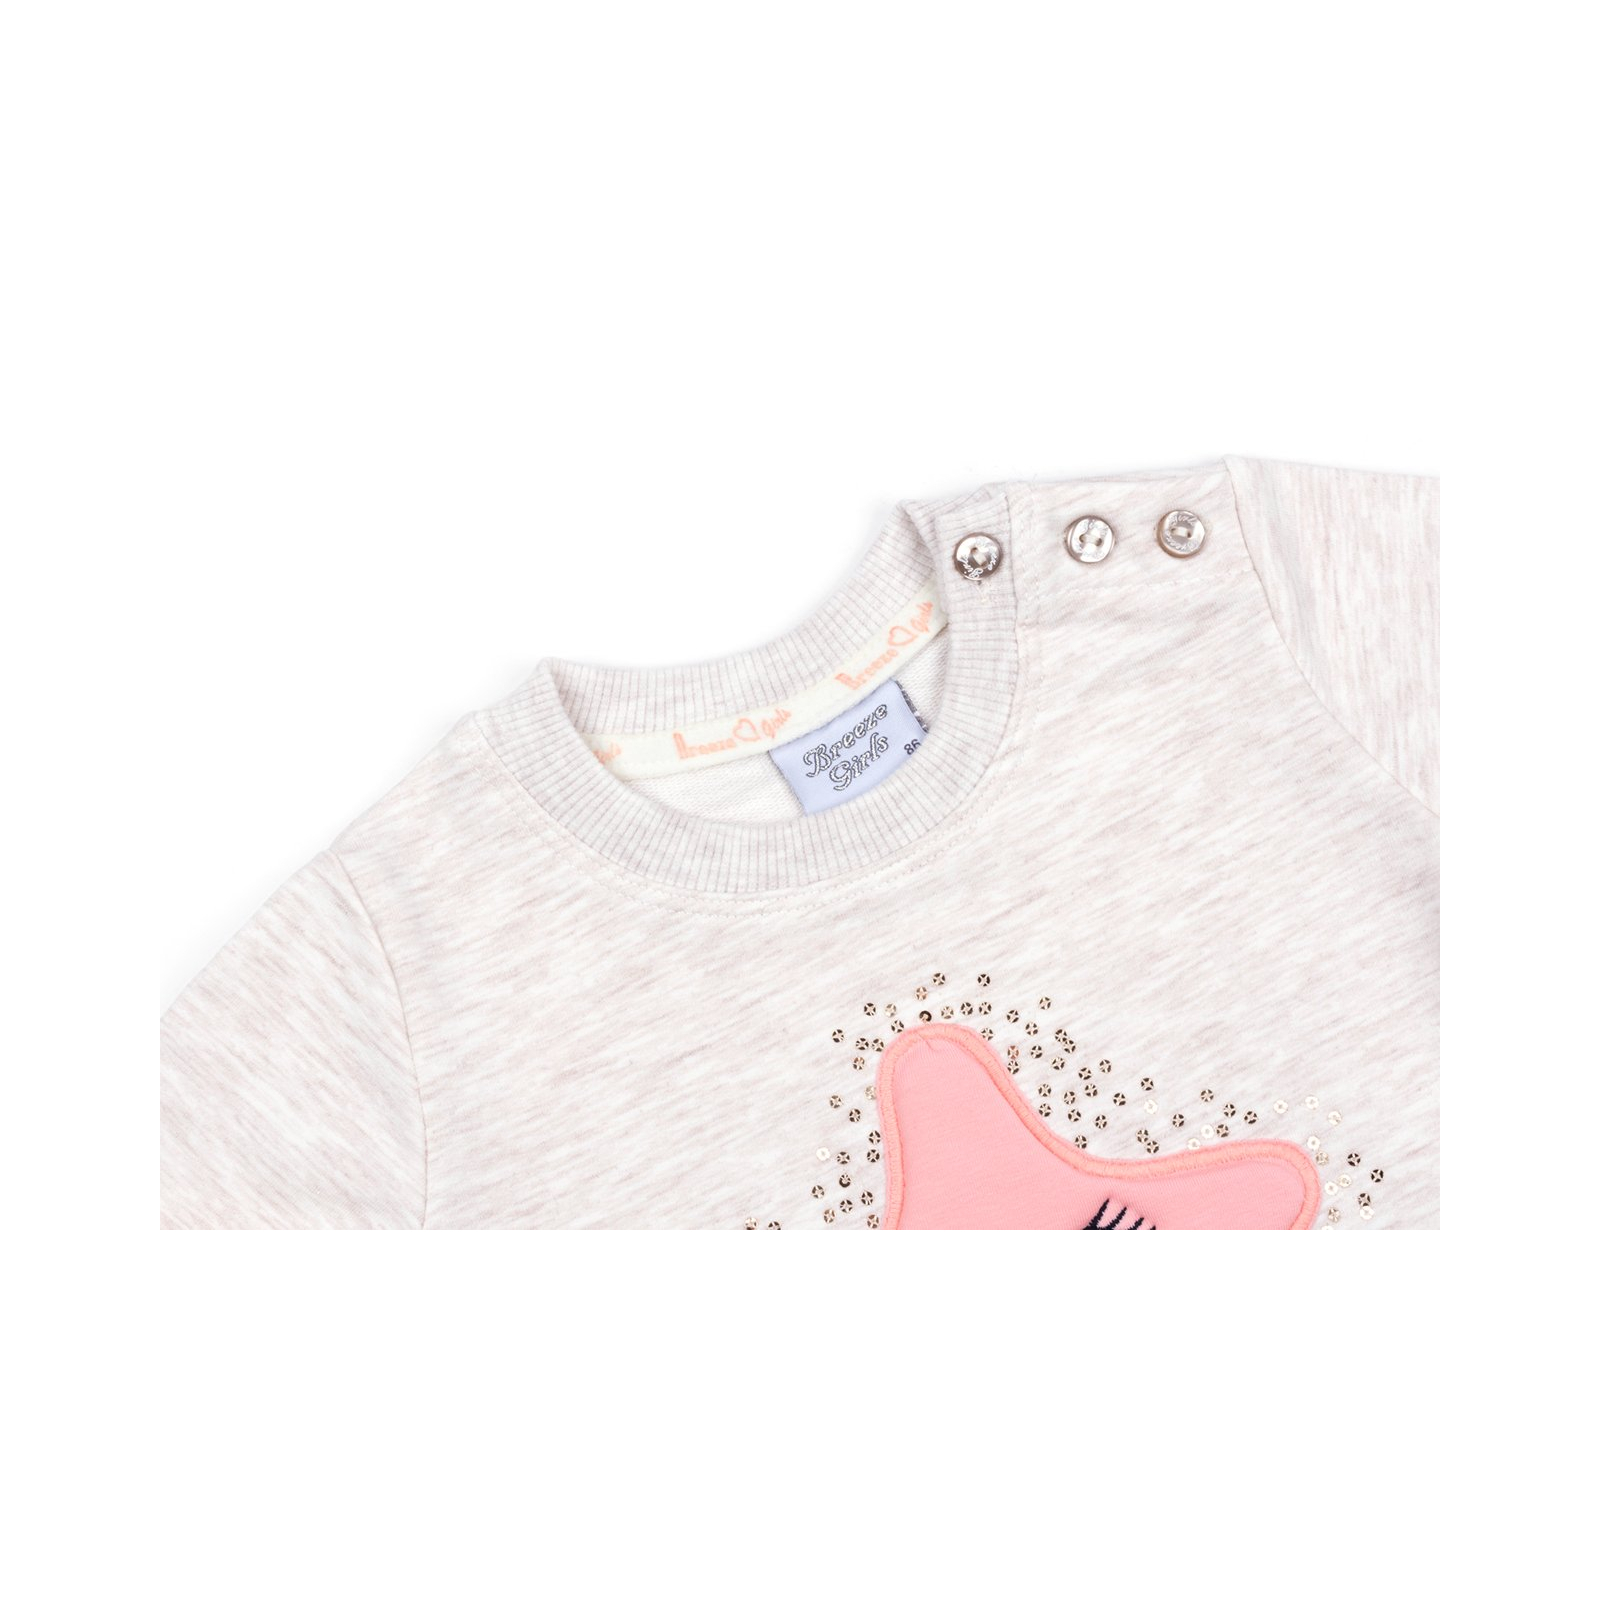 Набор детской одежды Breeze со звездочкой (9824-92G-beige) изображение 7